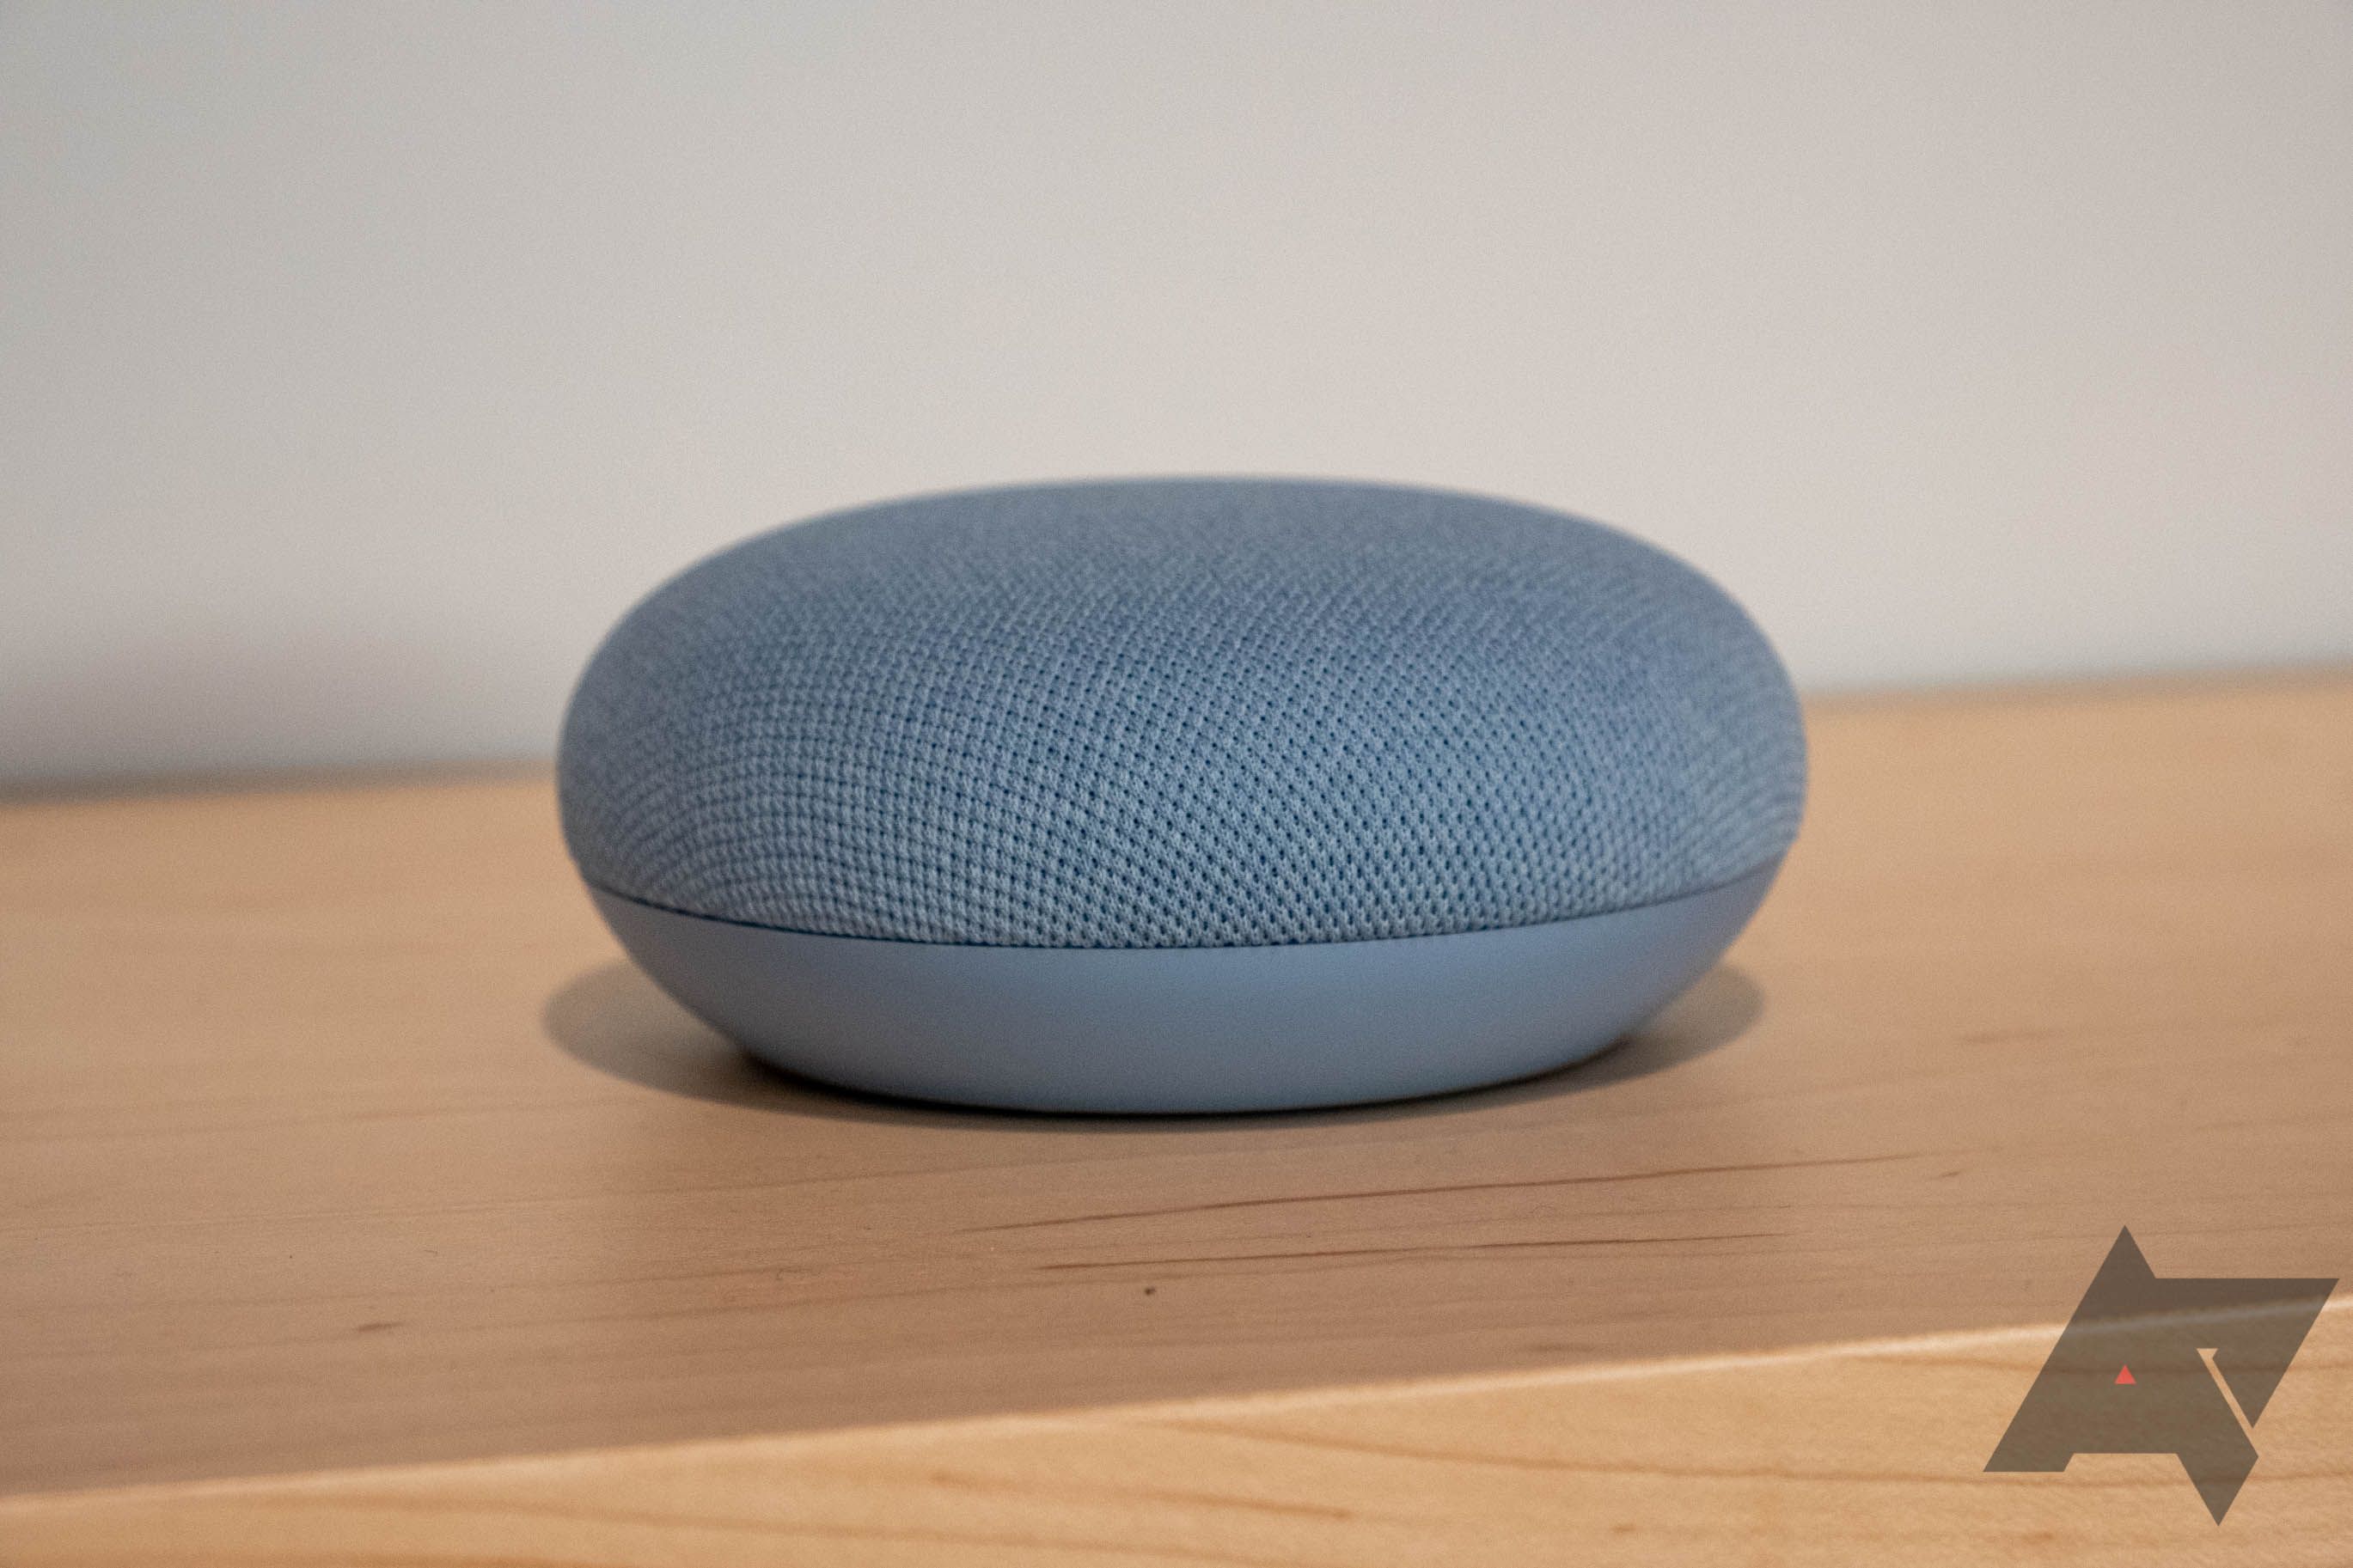 Echo Dot vs Google Home Mini, ¿Cuál es mejor en 2019?